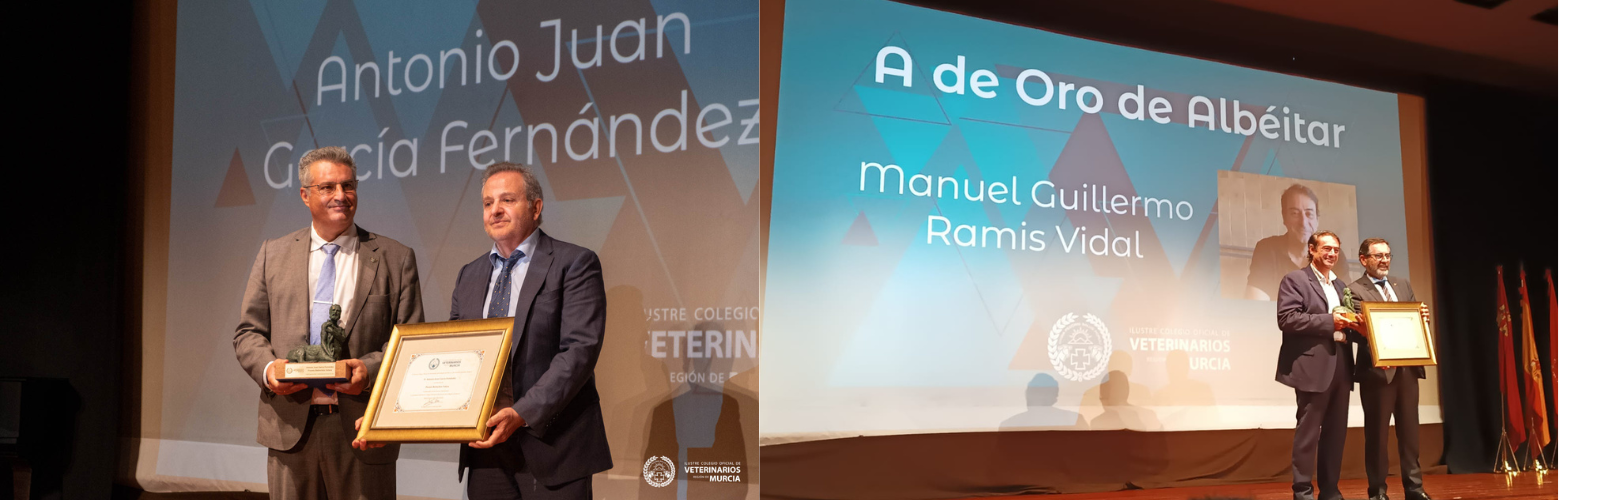 Los profesores de la UMU Antonio Juan García y Guillermo Ramis reciben el reconocimiento del Colegio de Veterinarios de Murcia